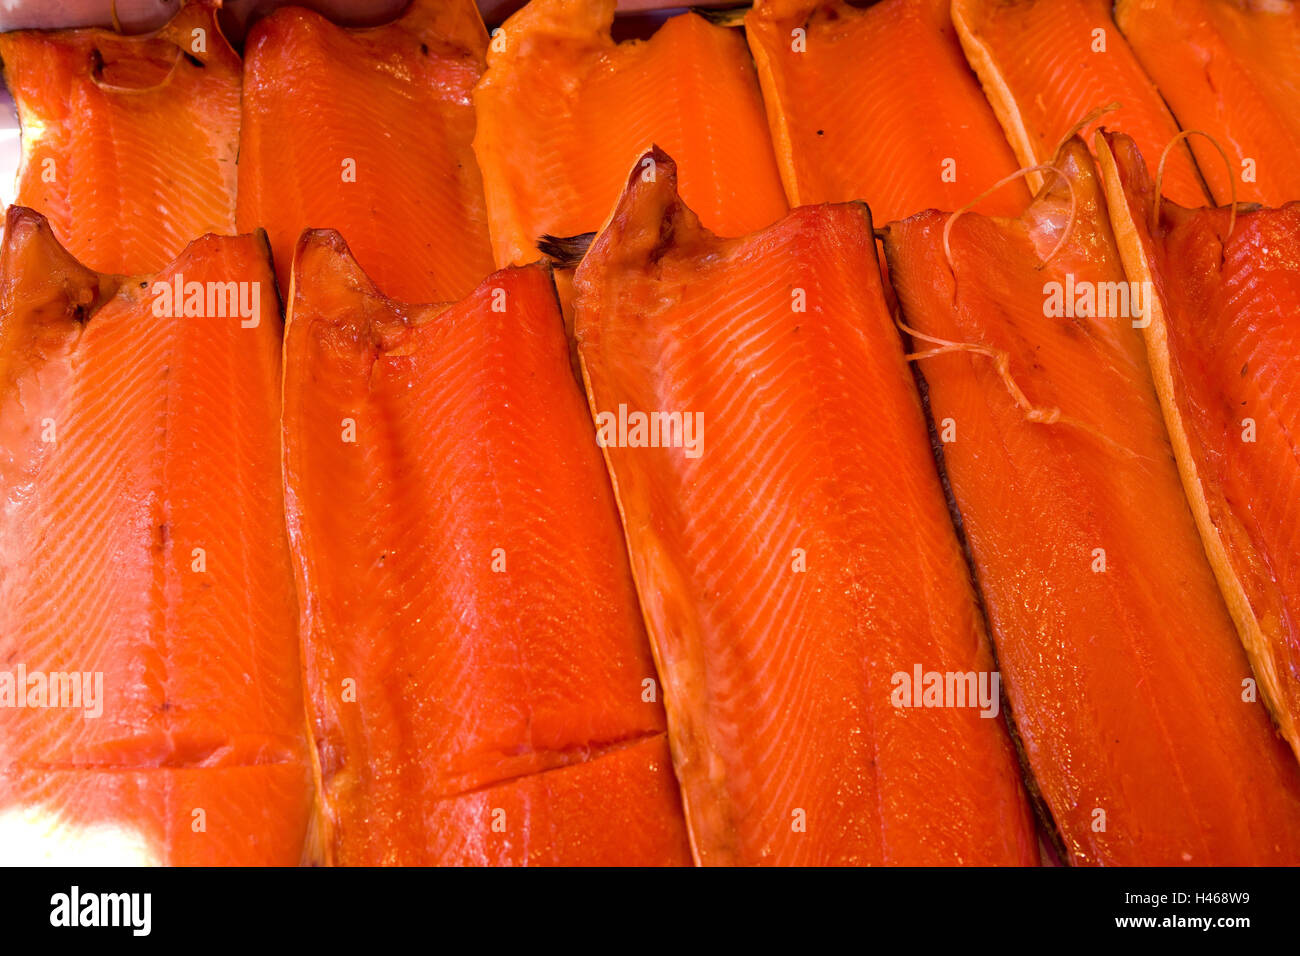 Mercato del Pesce, salmone affumicato, Foto Stock